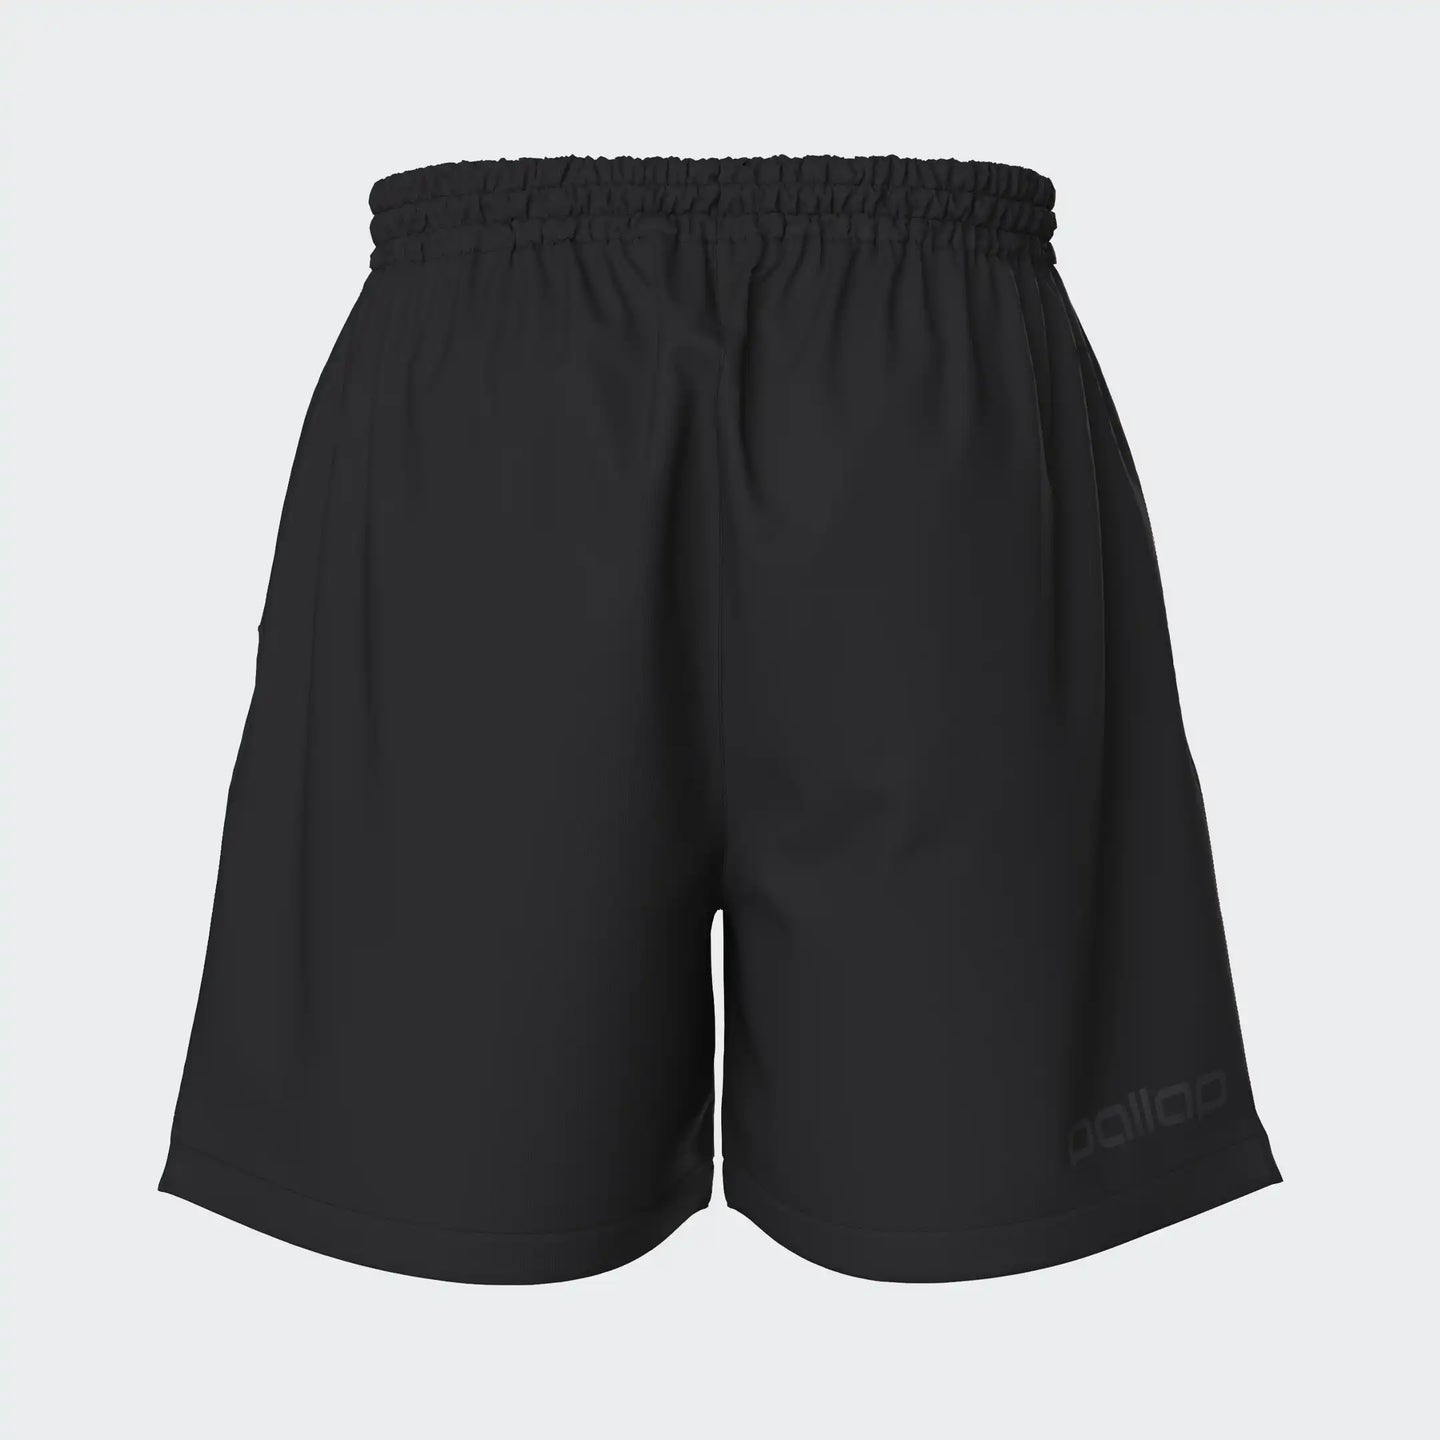 Pantalones cortos de competición Pallap para hombre